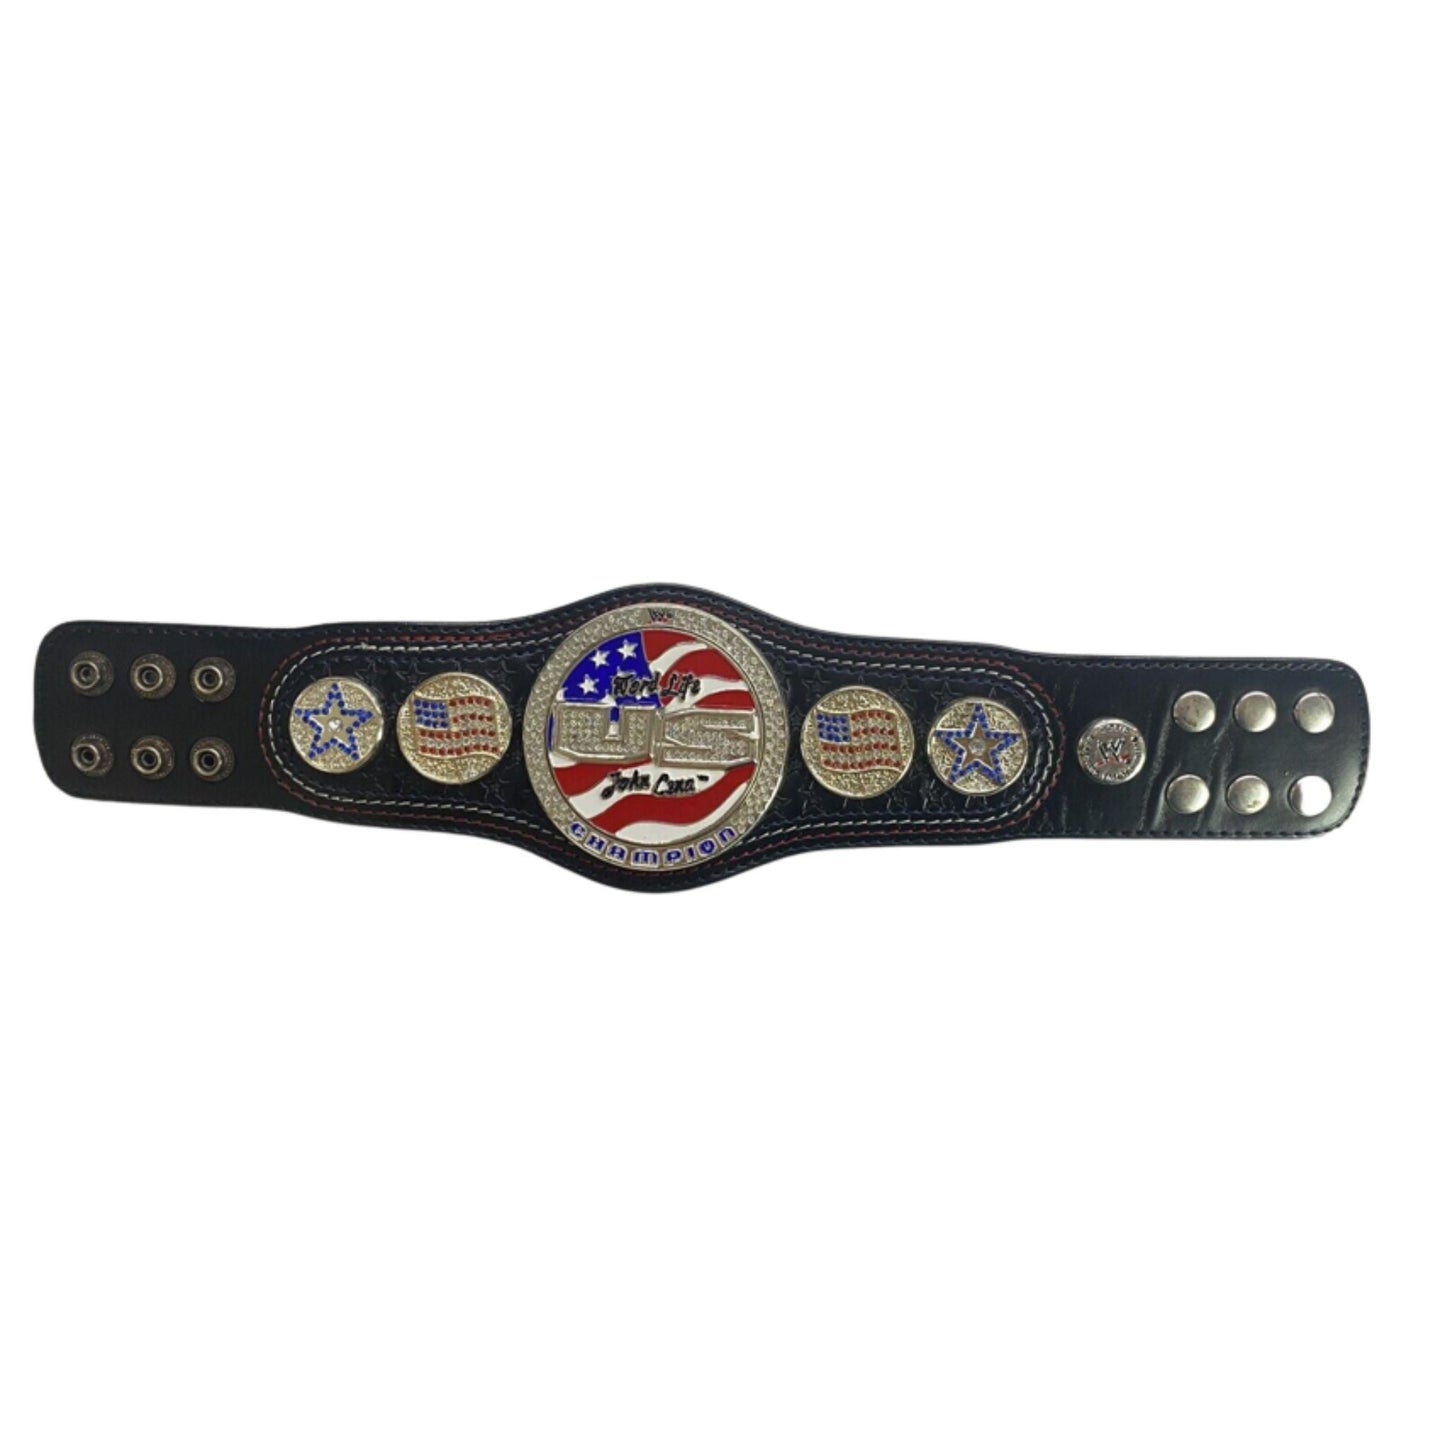 John Cena Spinner Wrestling Championship Mini Replica Title Belt